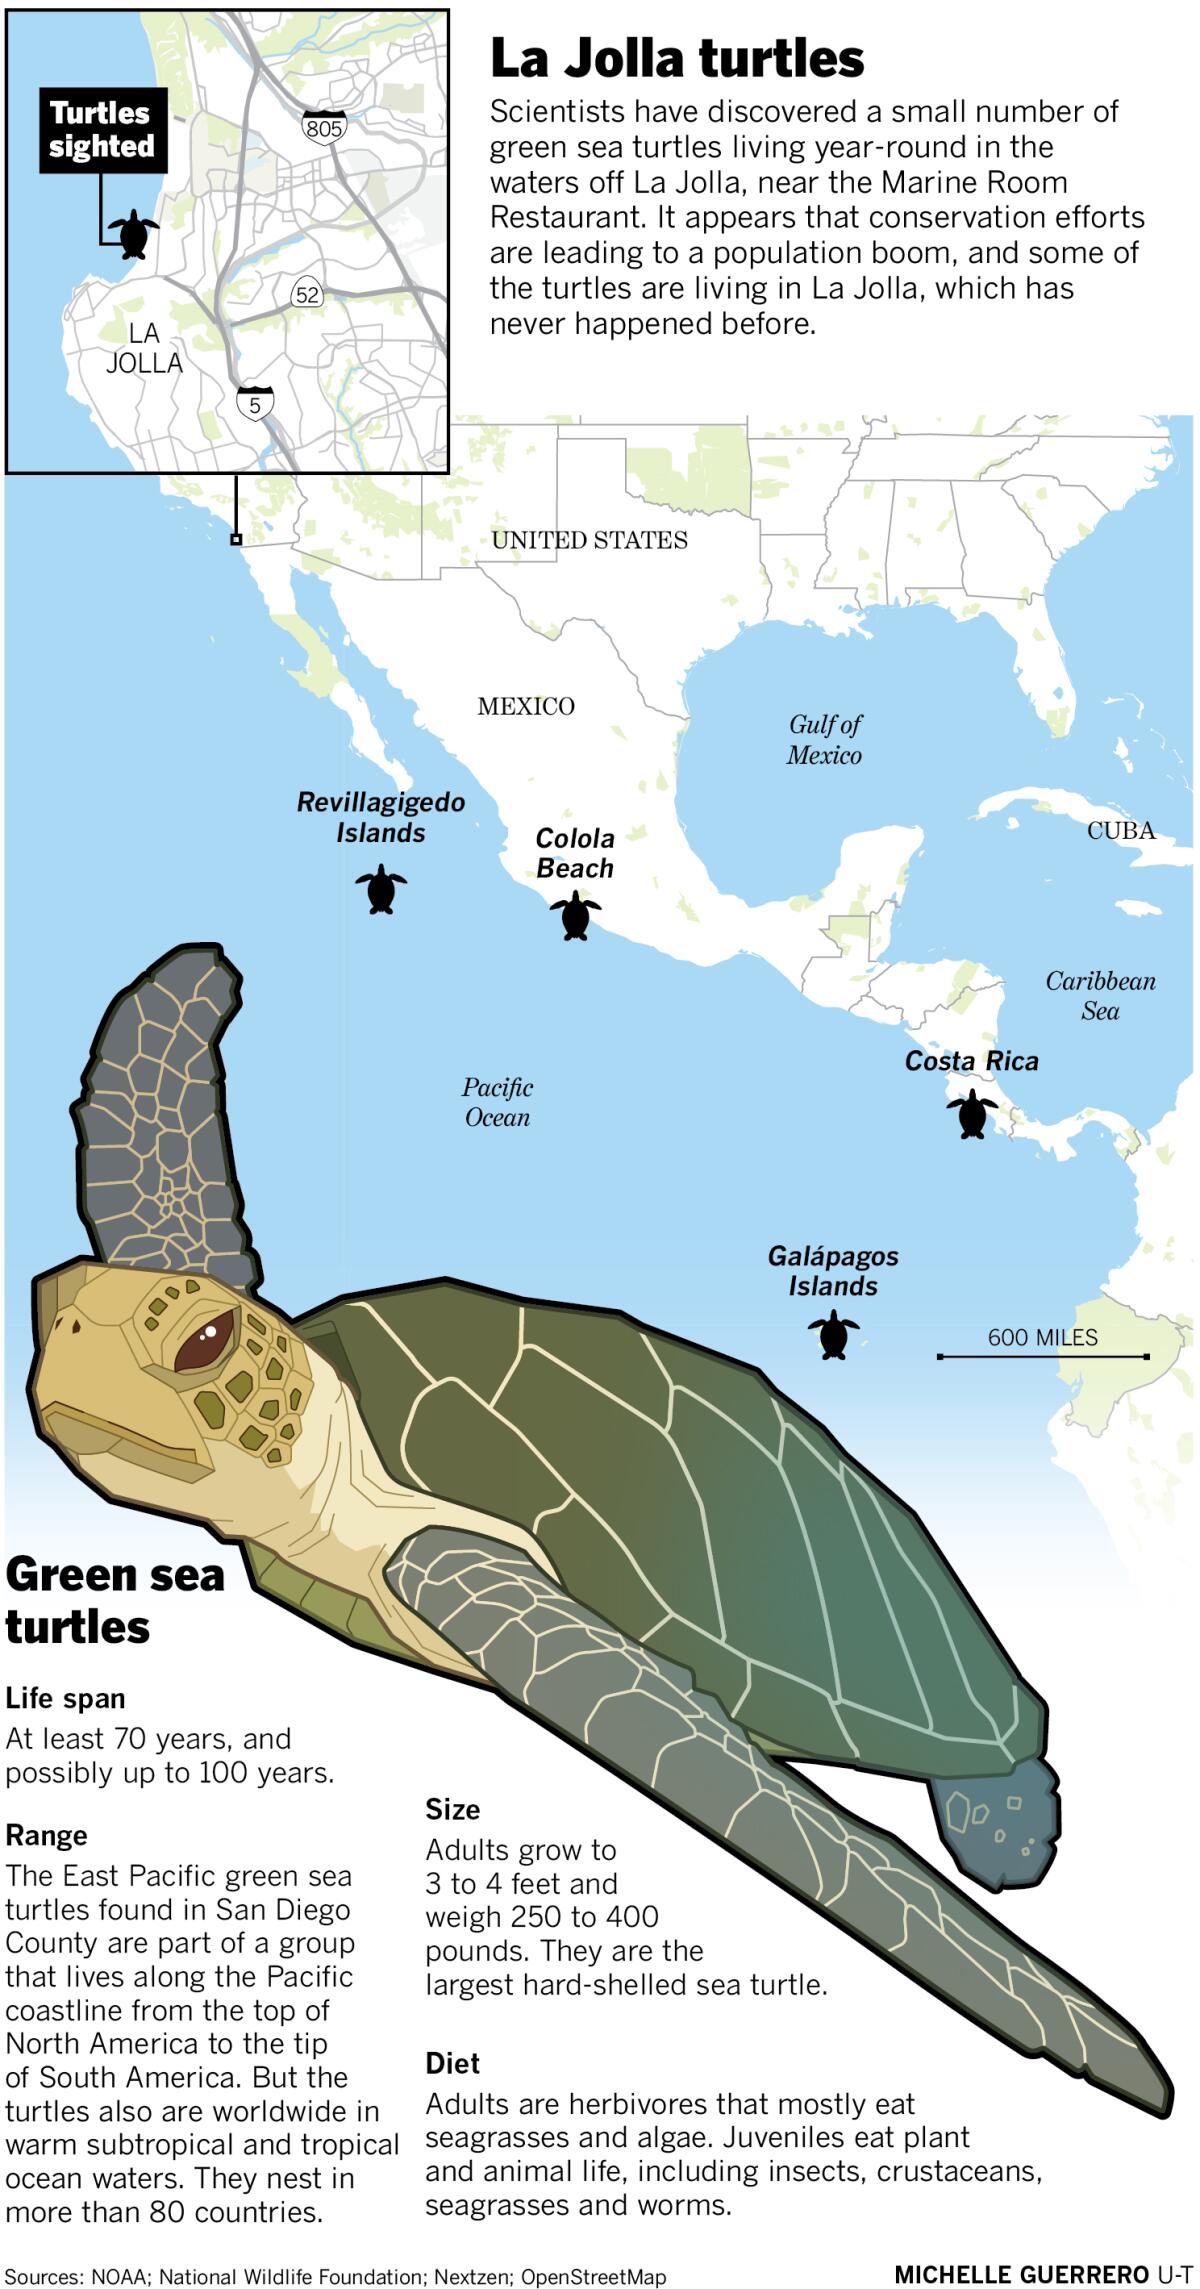 La Jolla turtles